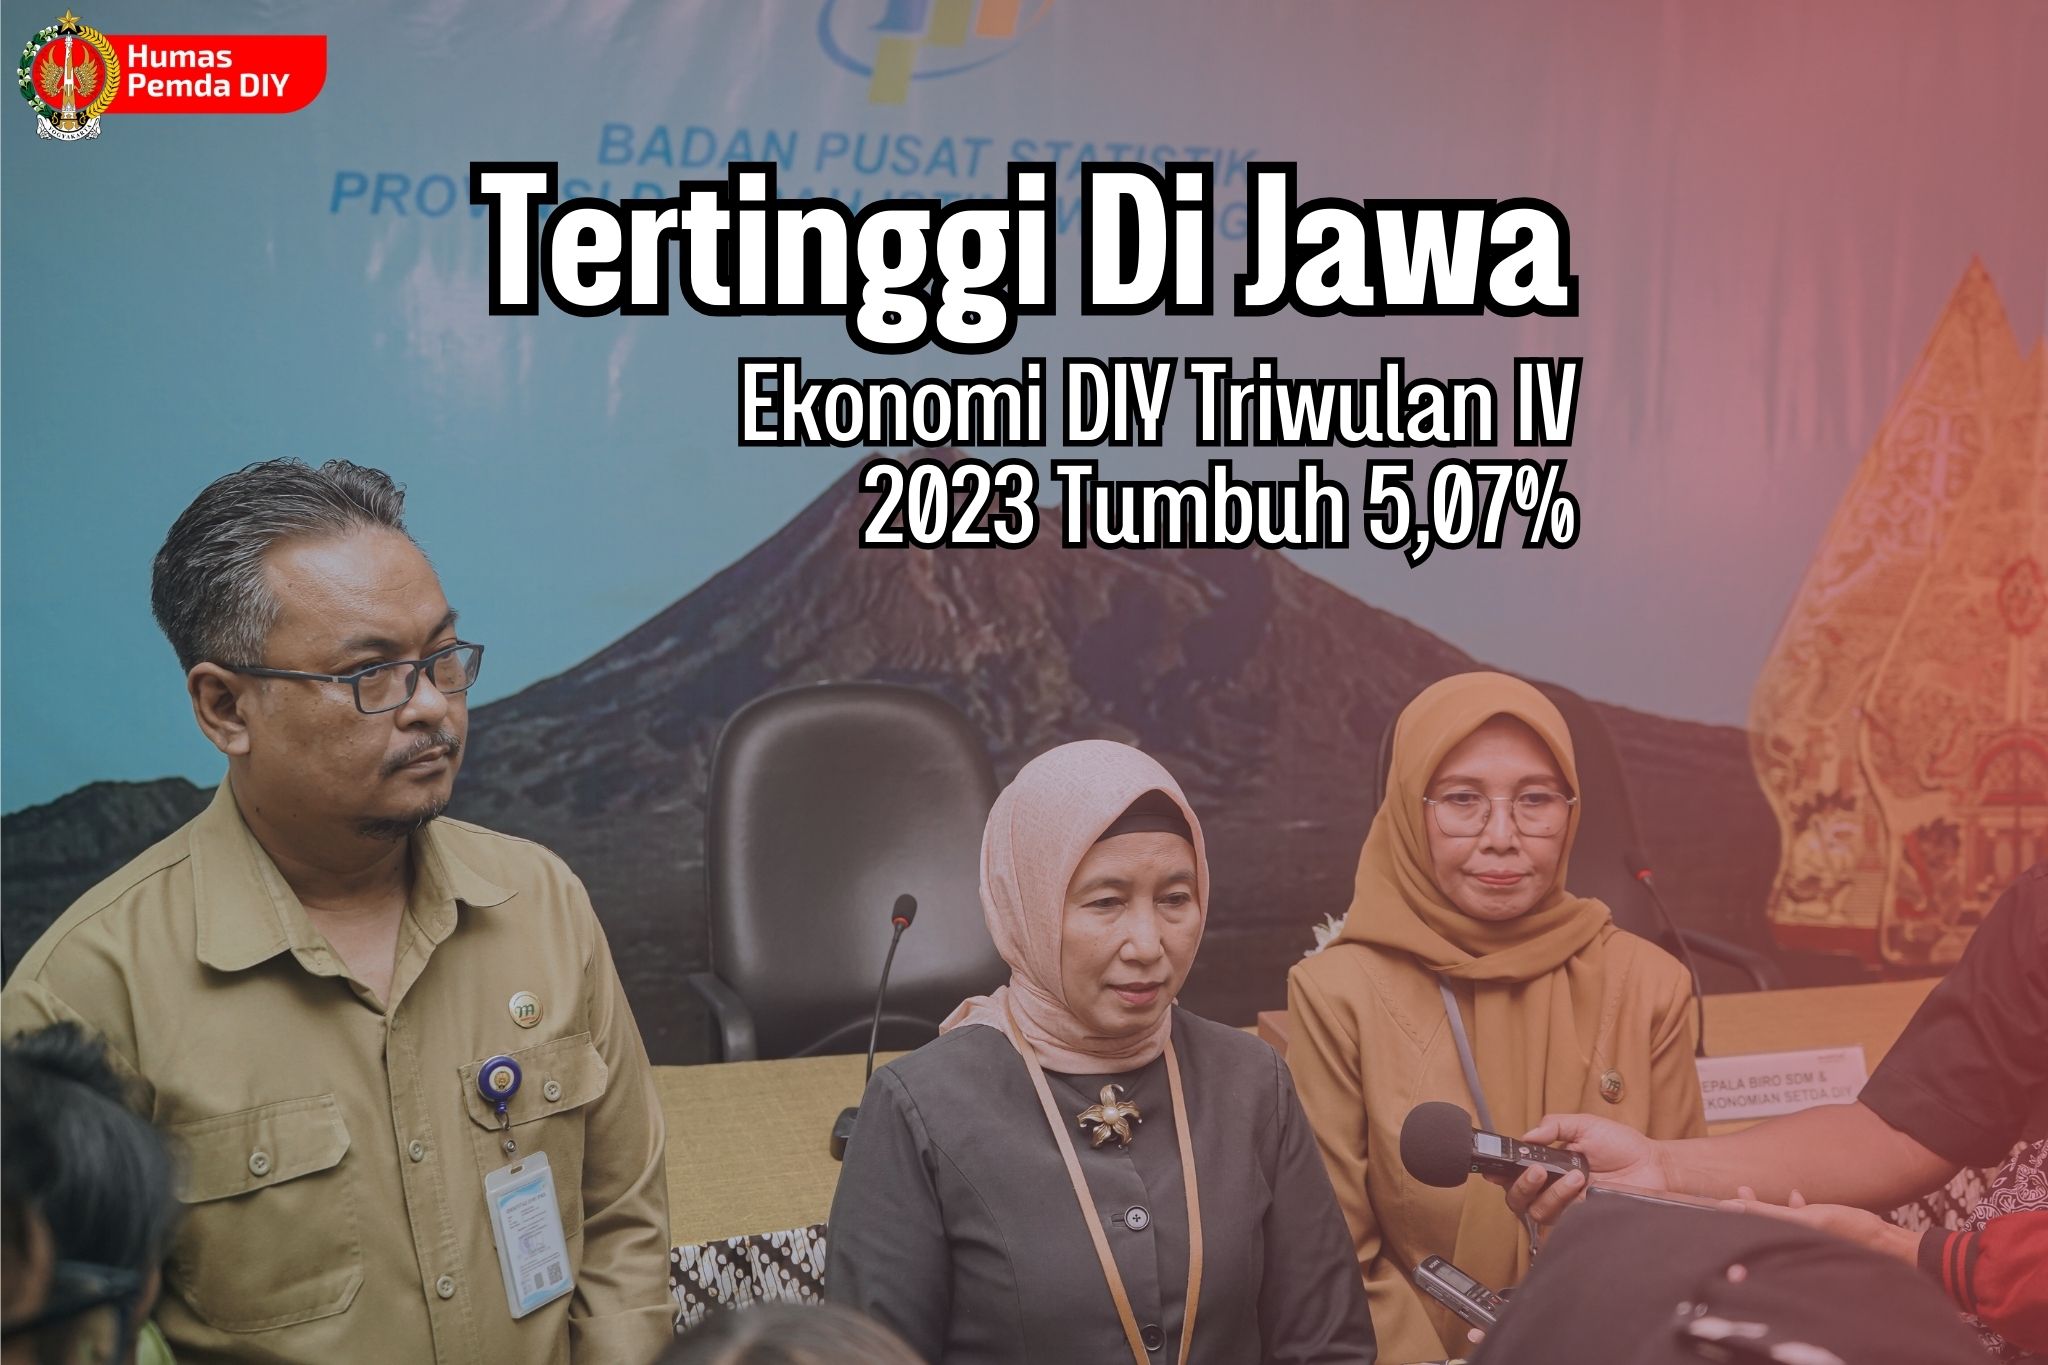  Tertinggi di Jawa, Ekonomi DIY Triwulan IV 2023 Tumbuh 5,07%